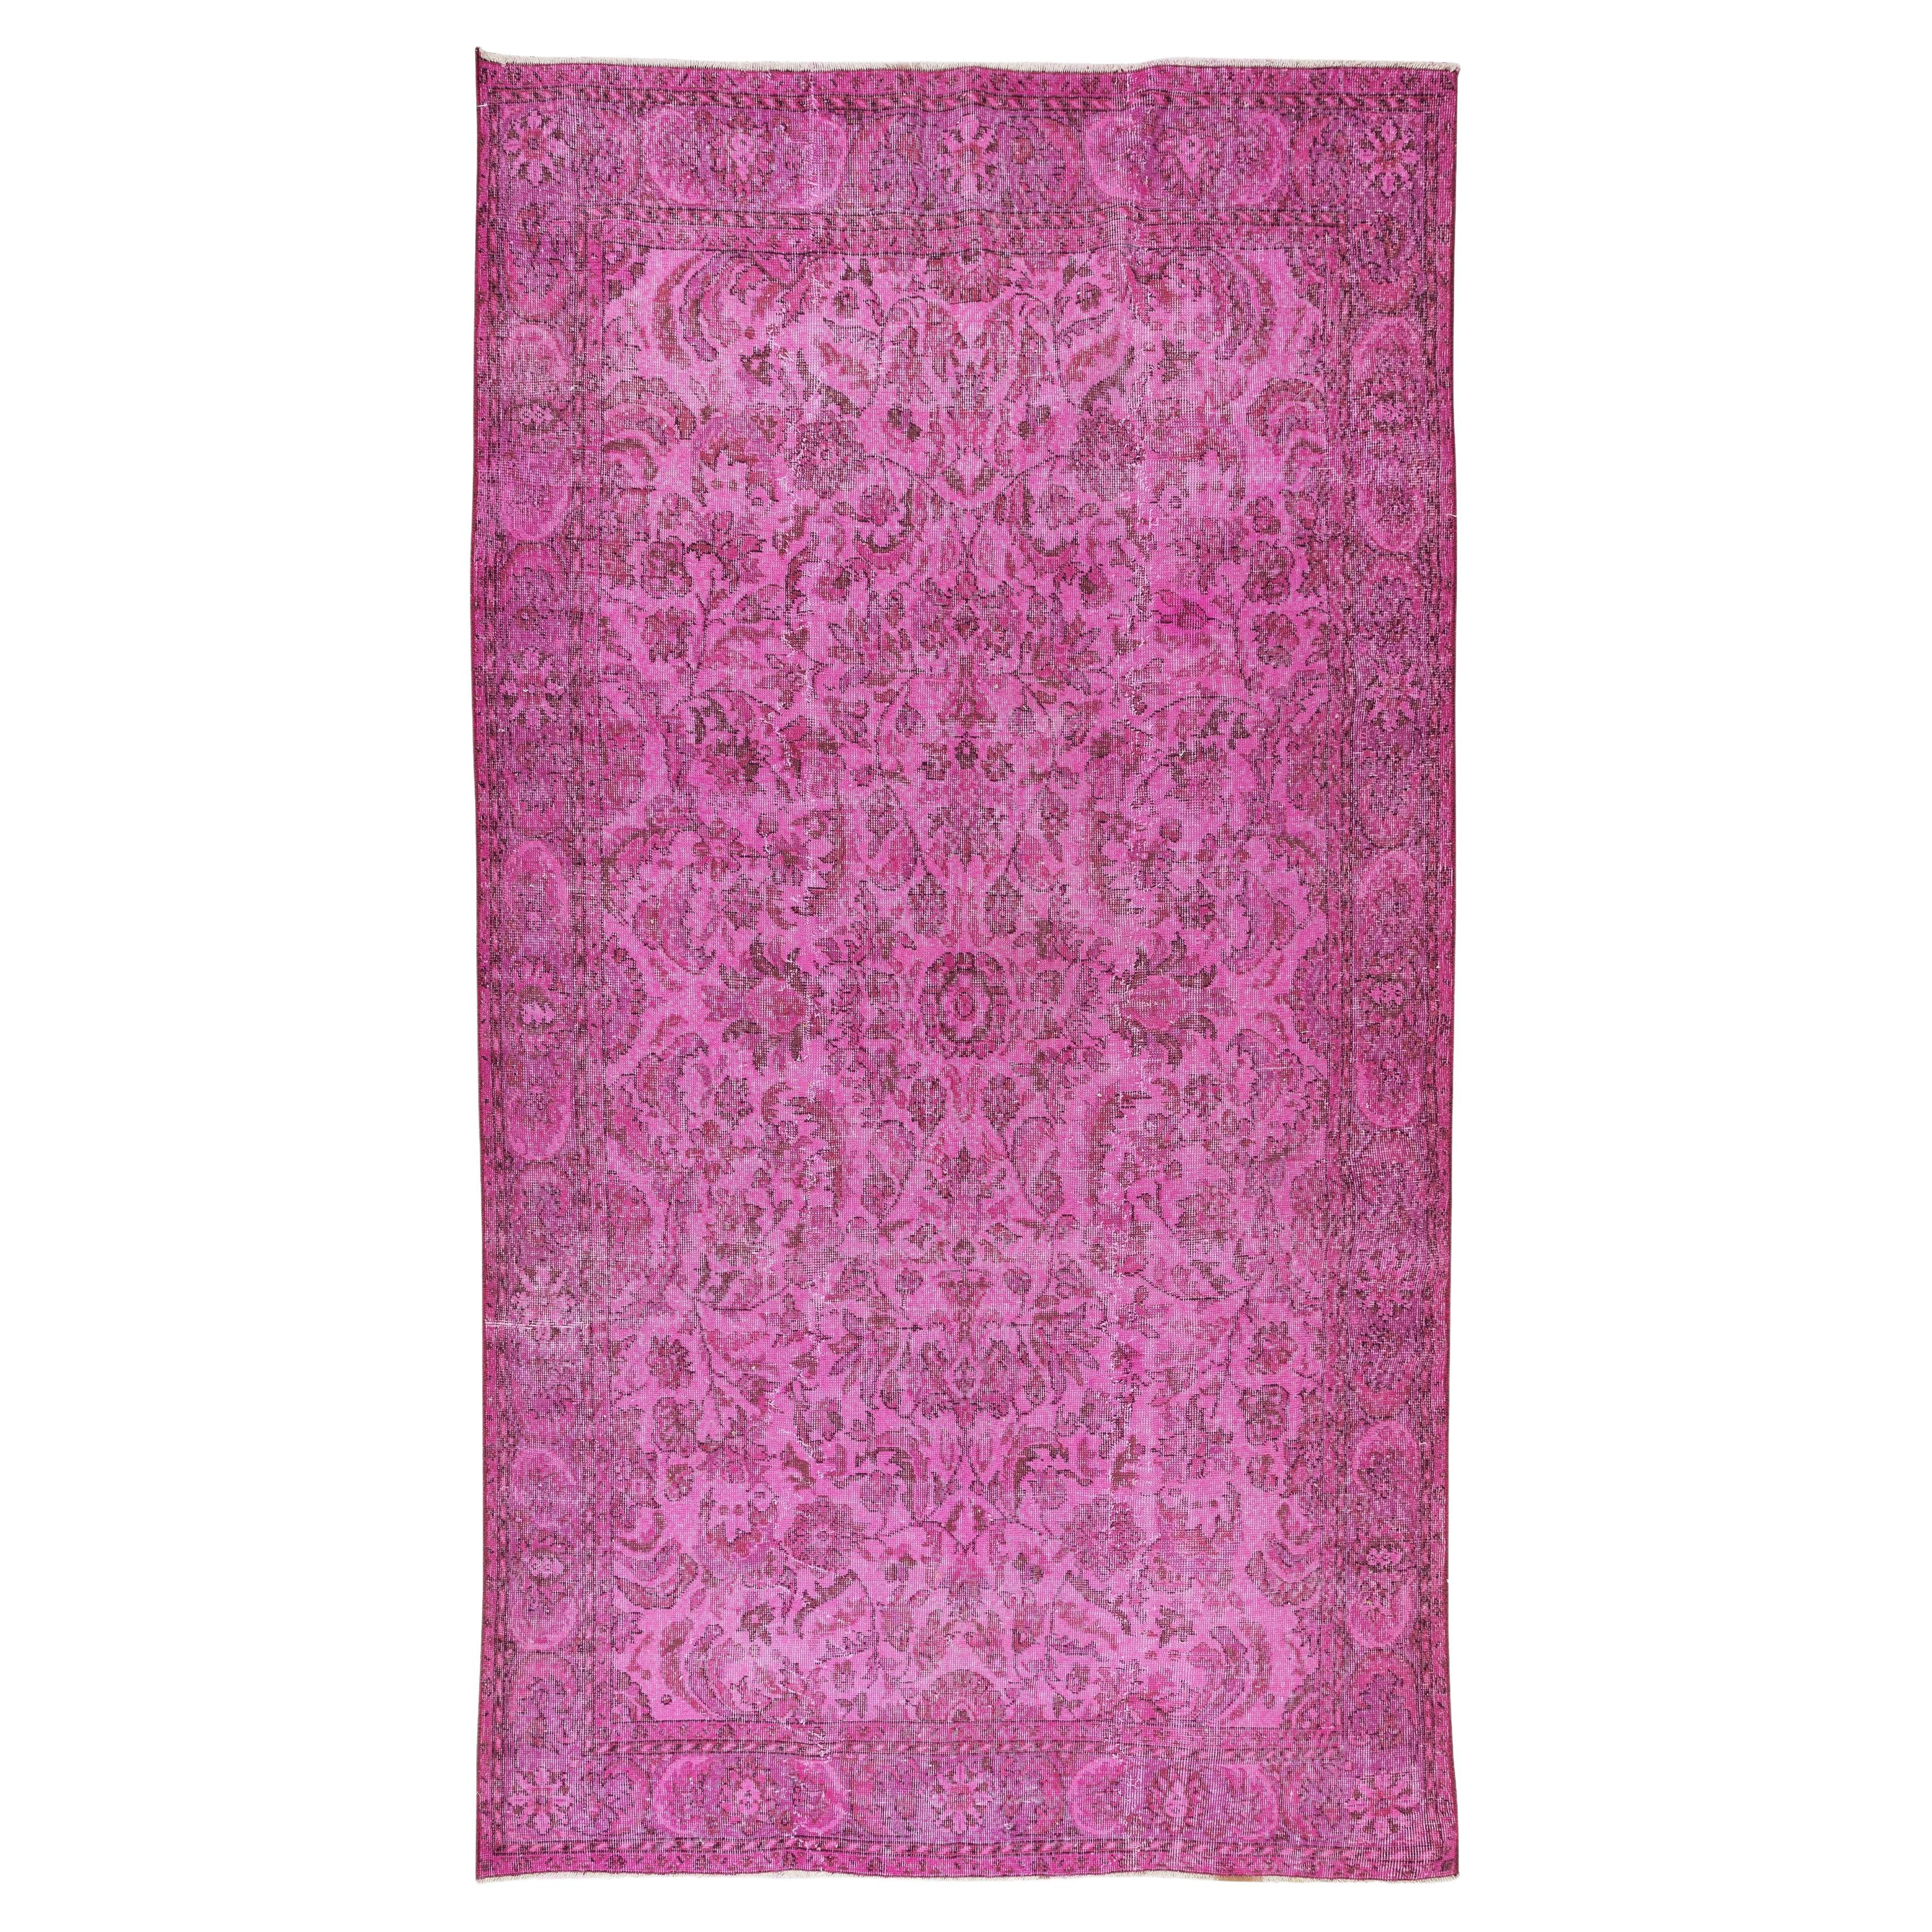 Handmade Turkish Vintage Rug Over-Dyed in Pink, Elegant Design Carpet